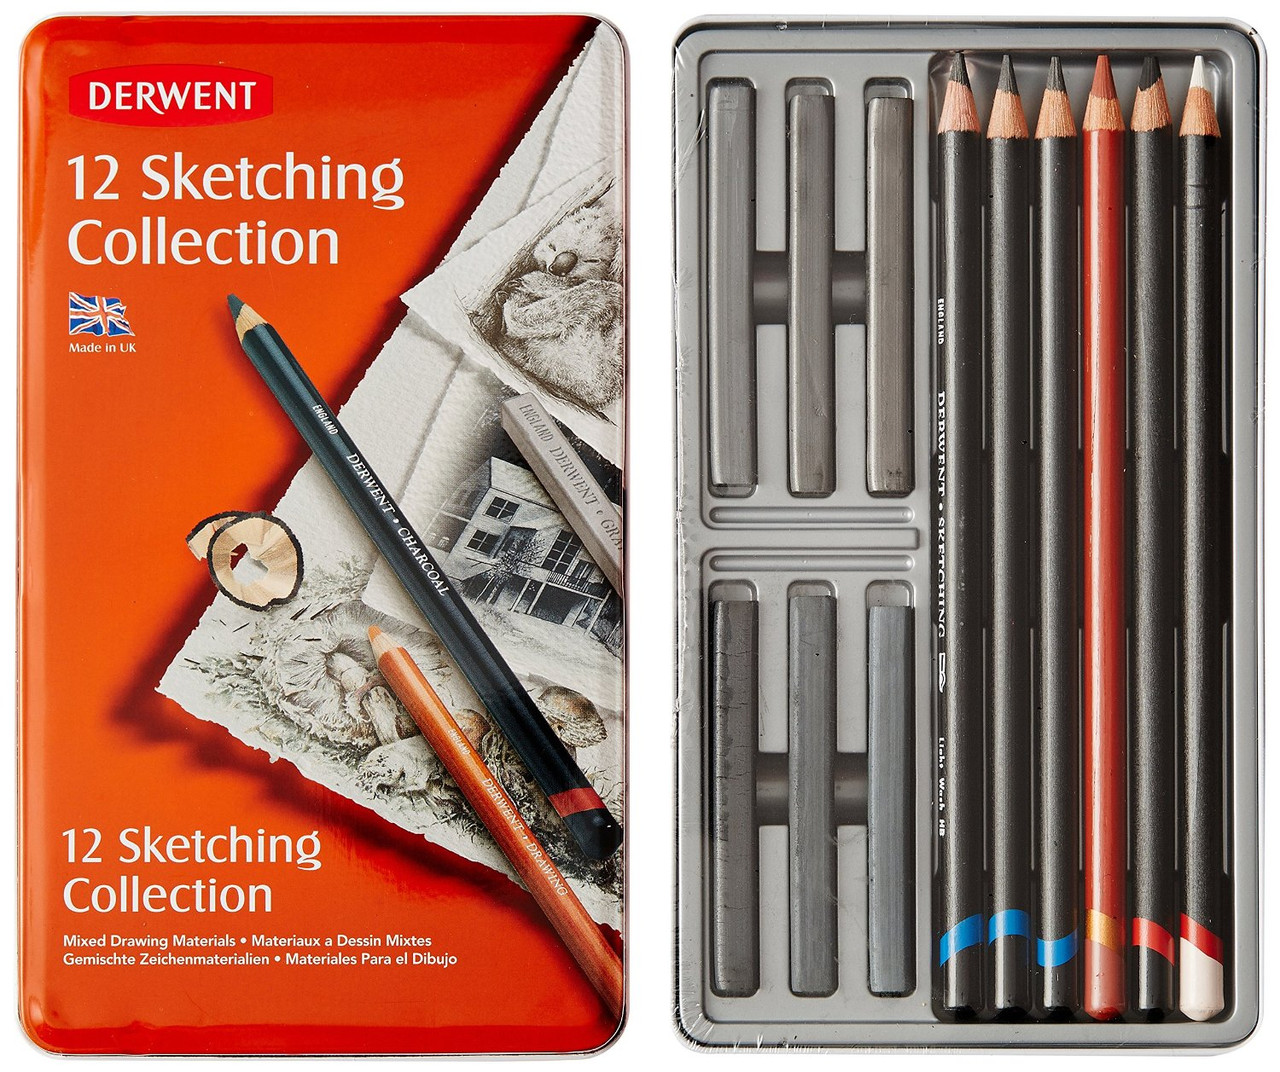 Набор для художников Sketching Collection, 12 шт., DERWENT (Англия)